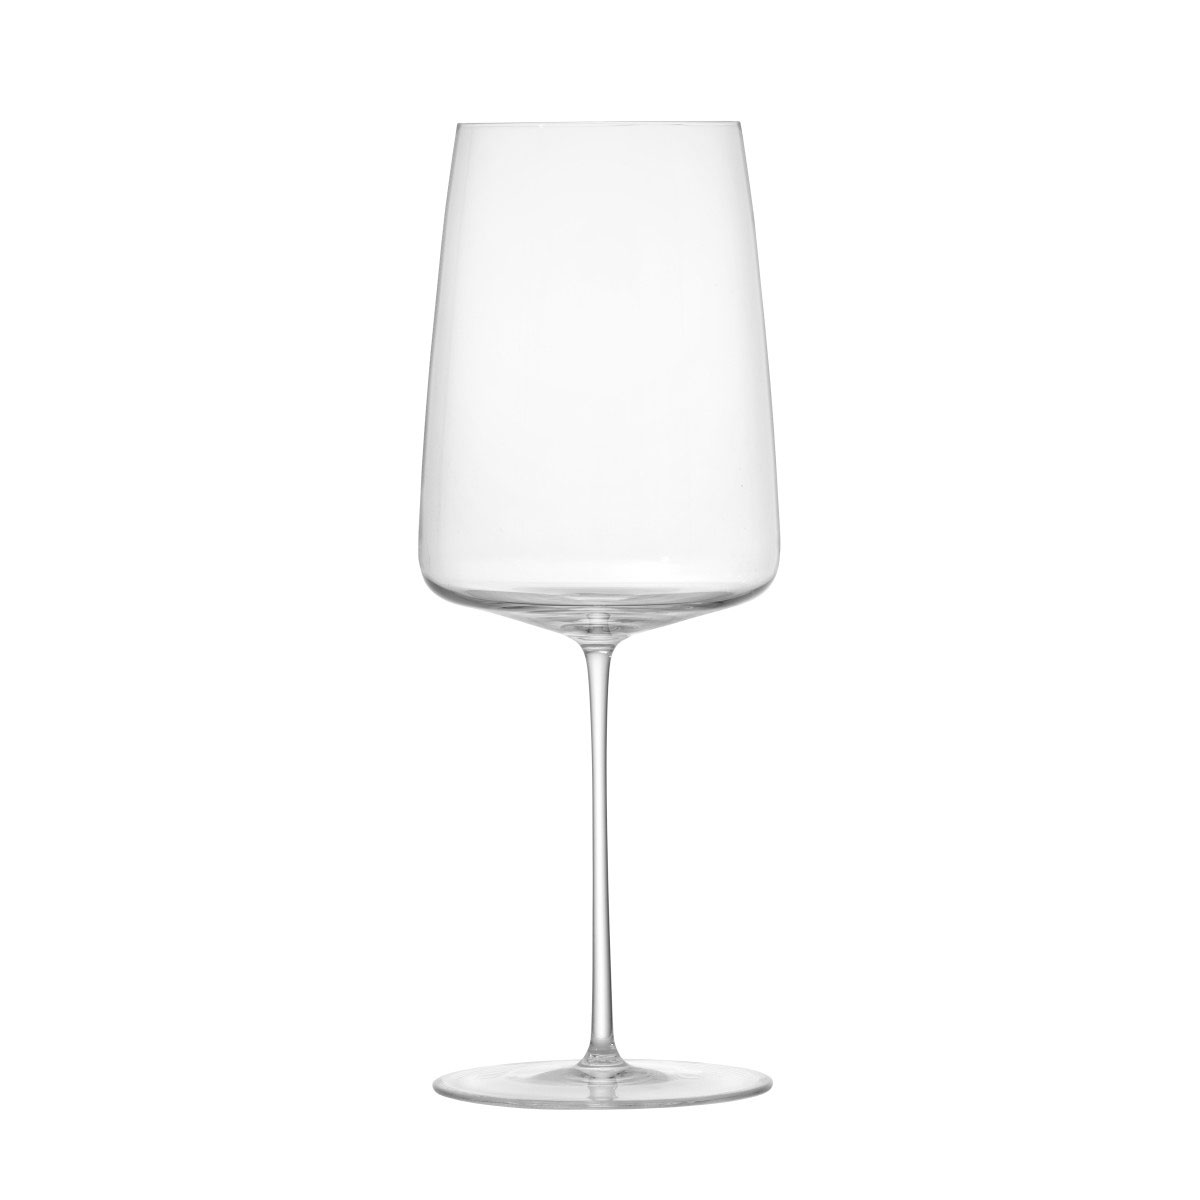 Schott Zwiesel Handmade Simplify Bordeaux Glass, Single